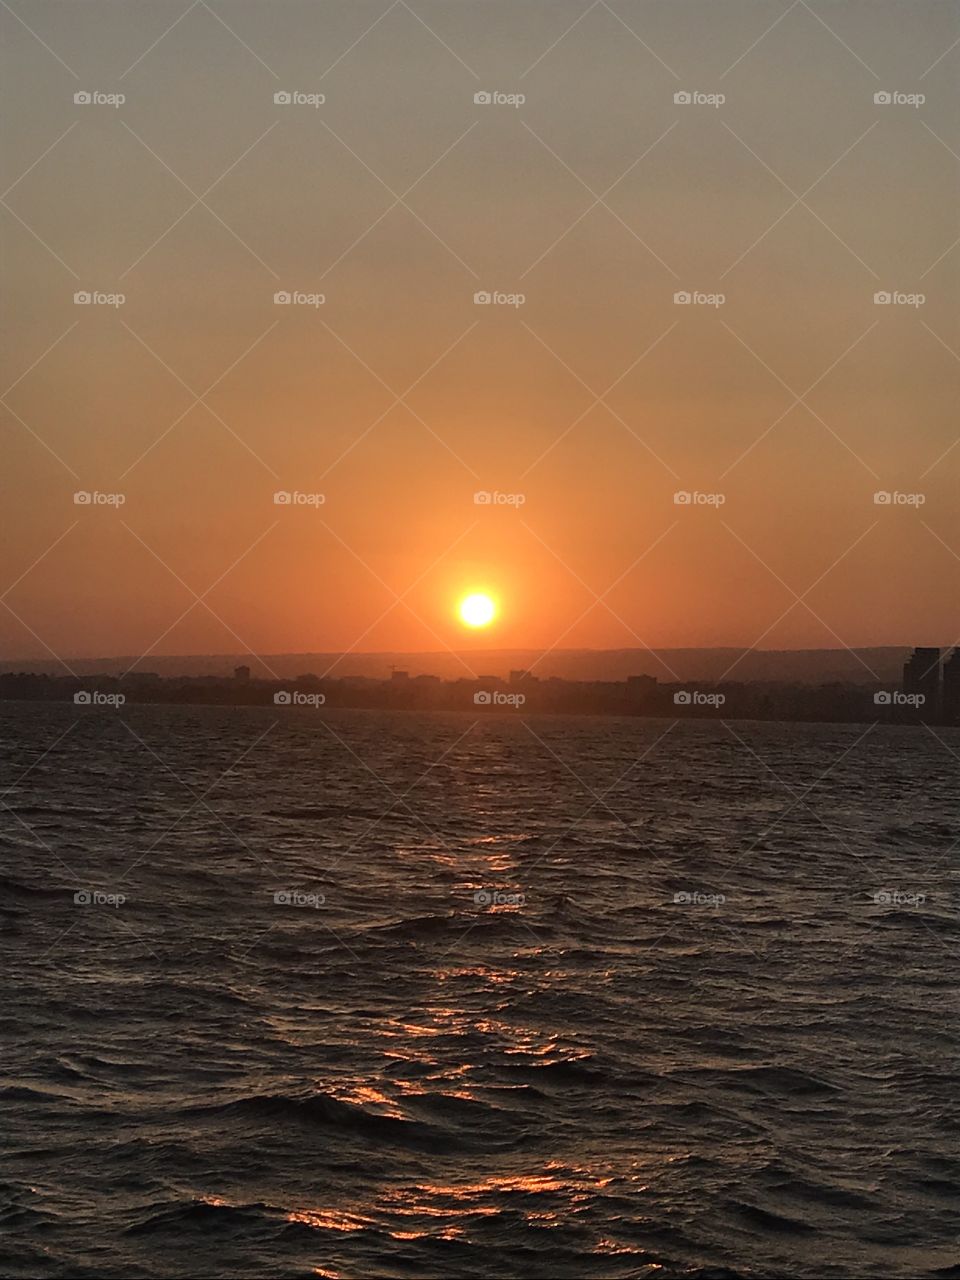 Limassol sunset